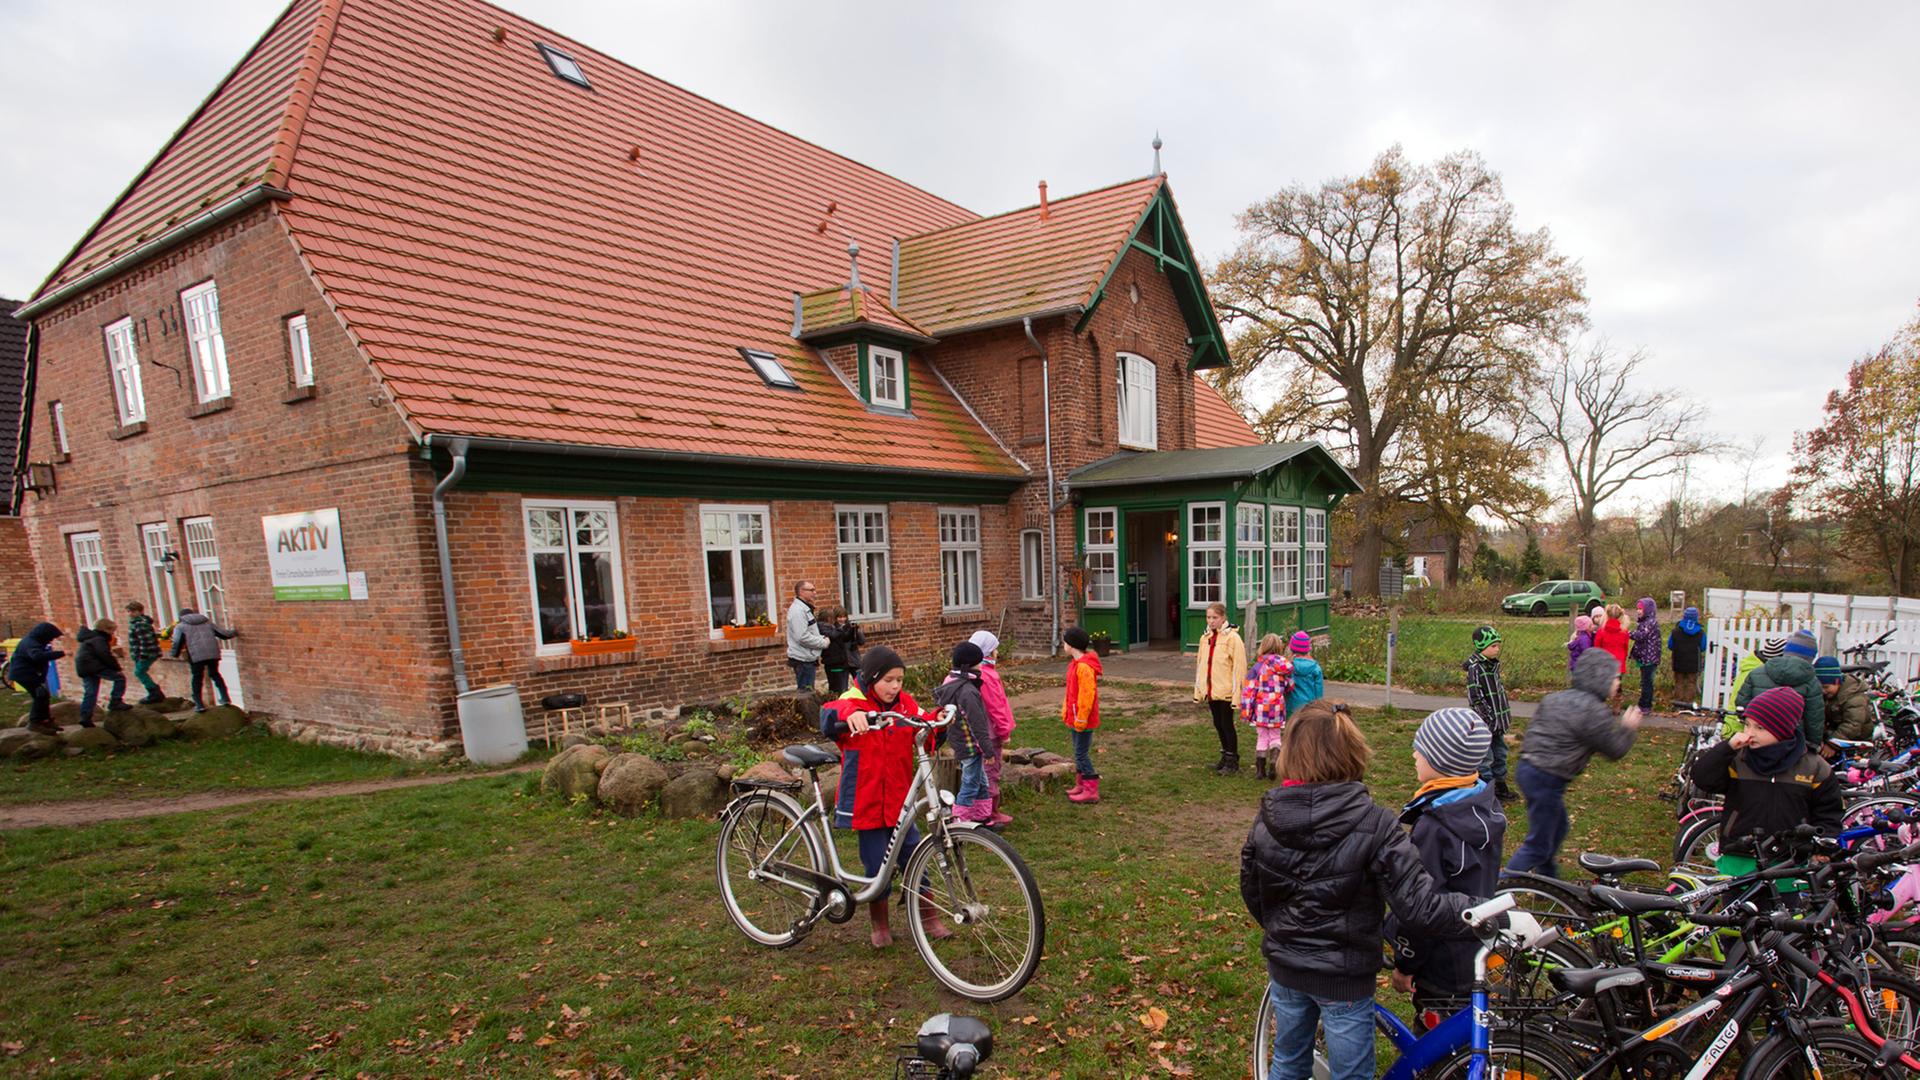 Schüler der privaten Grundschule in Bröbberow stellen auf der Wiese vor dem Schulgebäude ihre Fahrräder ab.